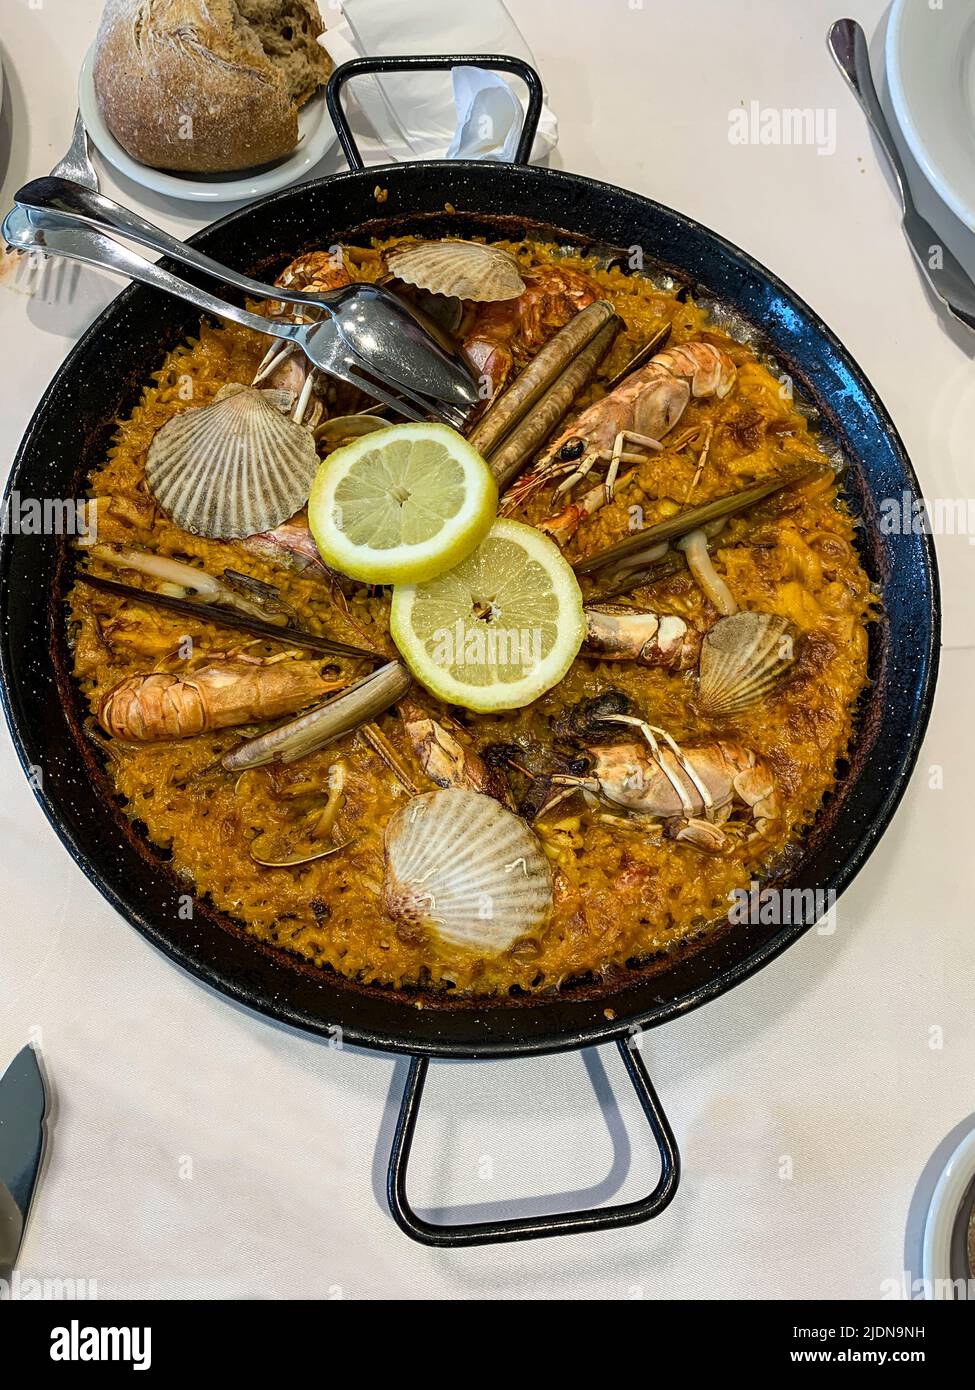 Spanien, Fisterra. Spanische Küche. Eine Meeresfrüchte-Paella mit einer Vielzahl von Meeresfrüchten Zutaten. Stockfoto